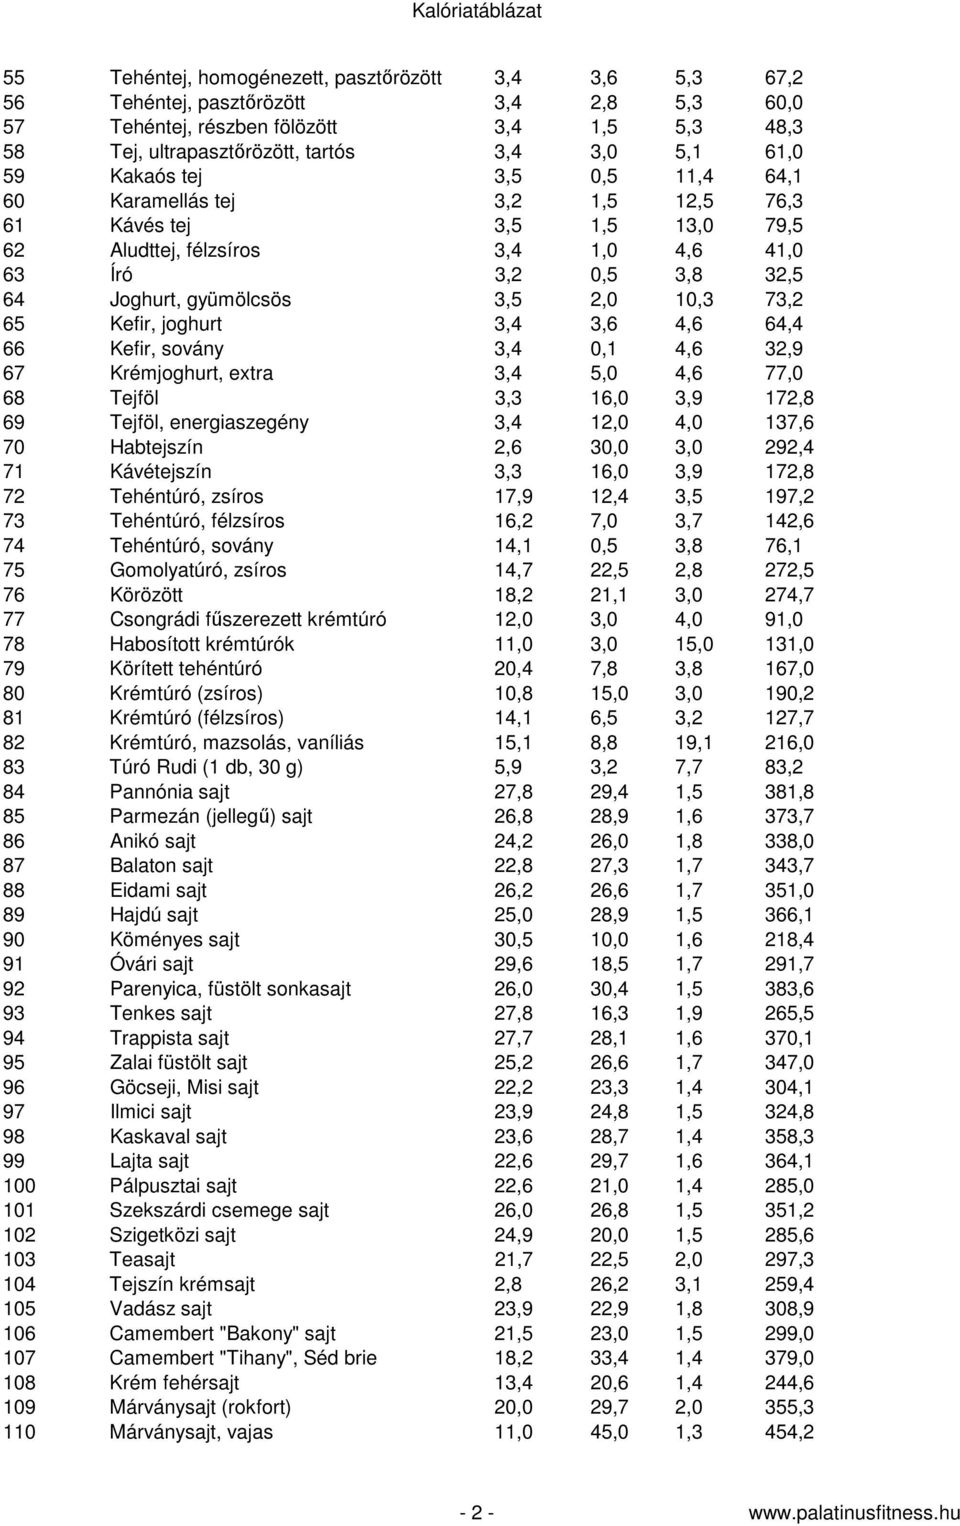 Kalóriatáblázat pdf